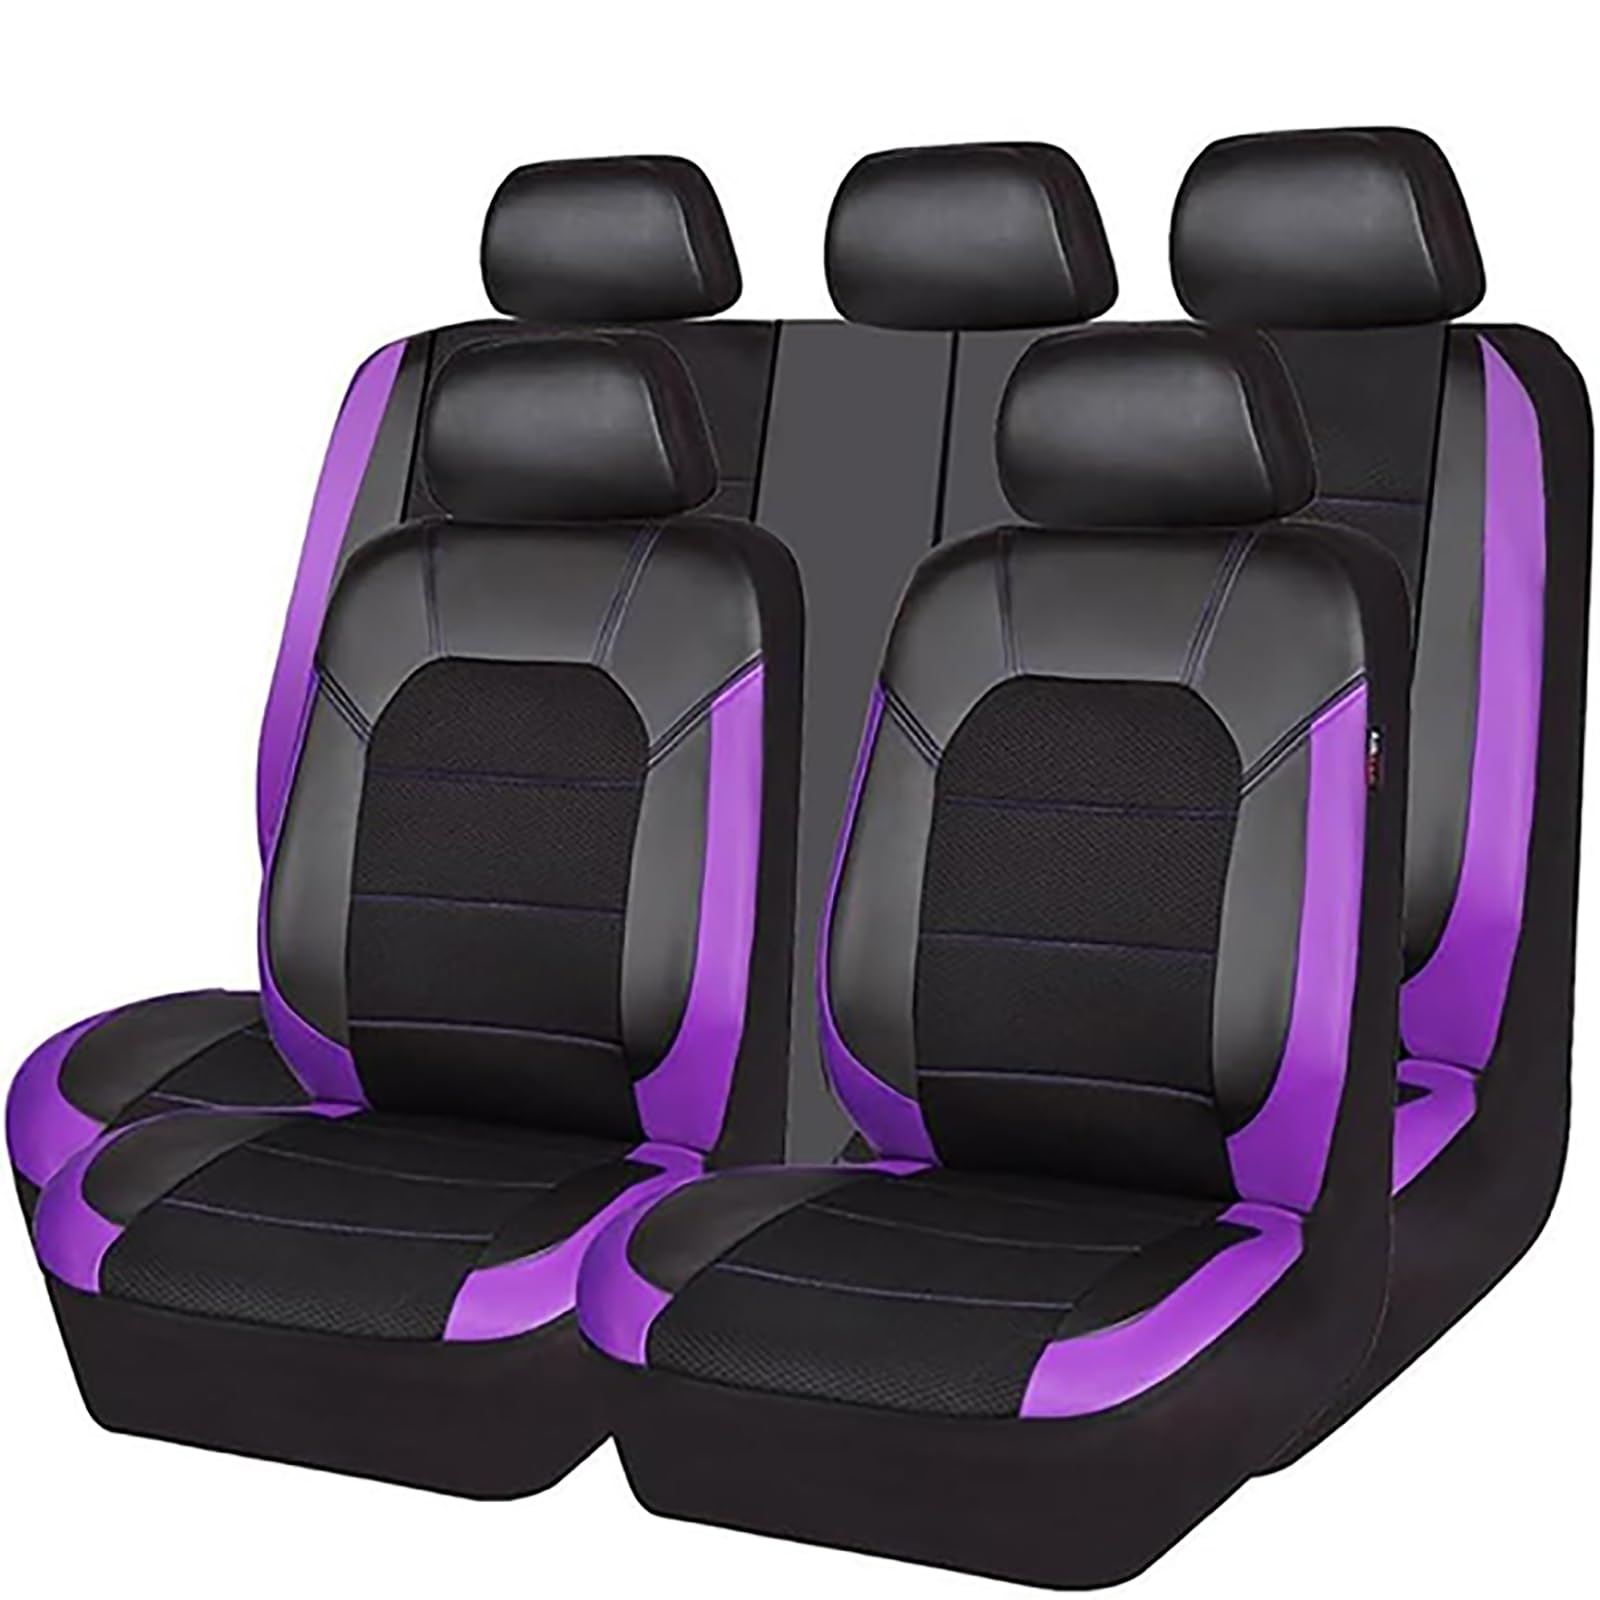 EYHQKRTR Auto Leder Sitzkissen Für H-onda Accord 2003-2018, 5 Sitzer Full Set SitzbezüGe Schonbezug Vorne Rückbank Sitzschutz Compatible Airbag Innenraum Zubehör,E/Purple von EYHQKRTR